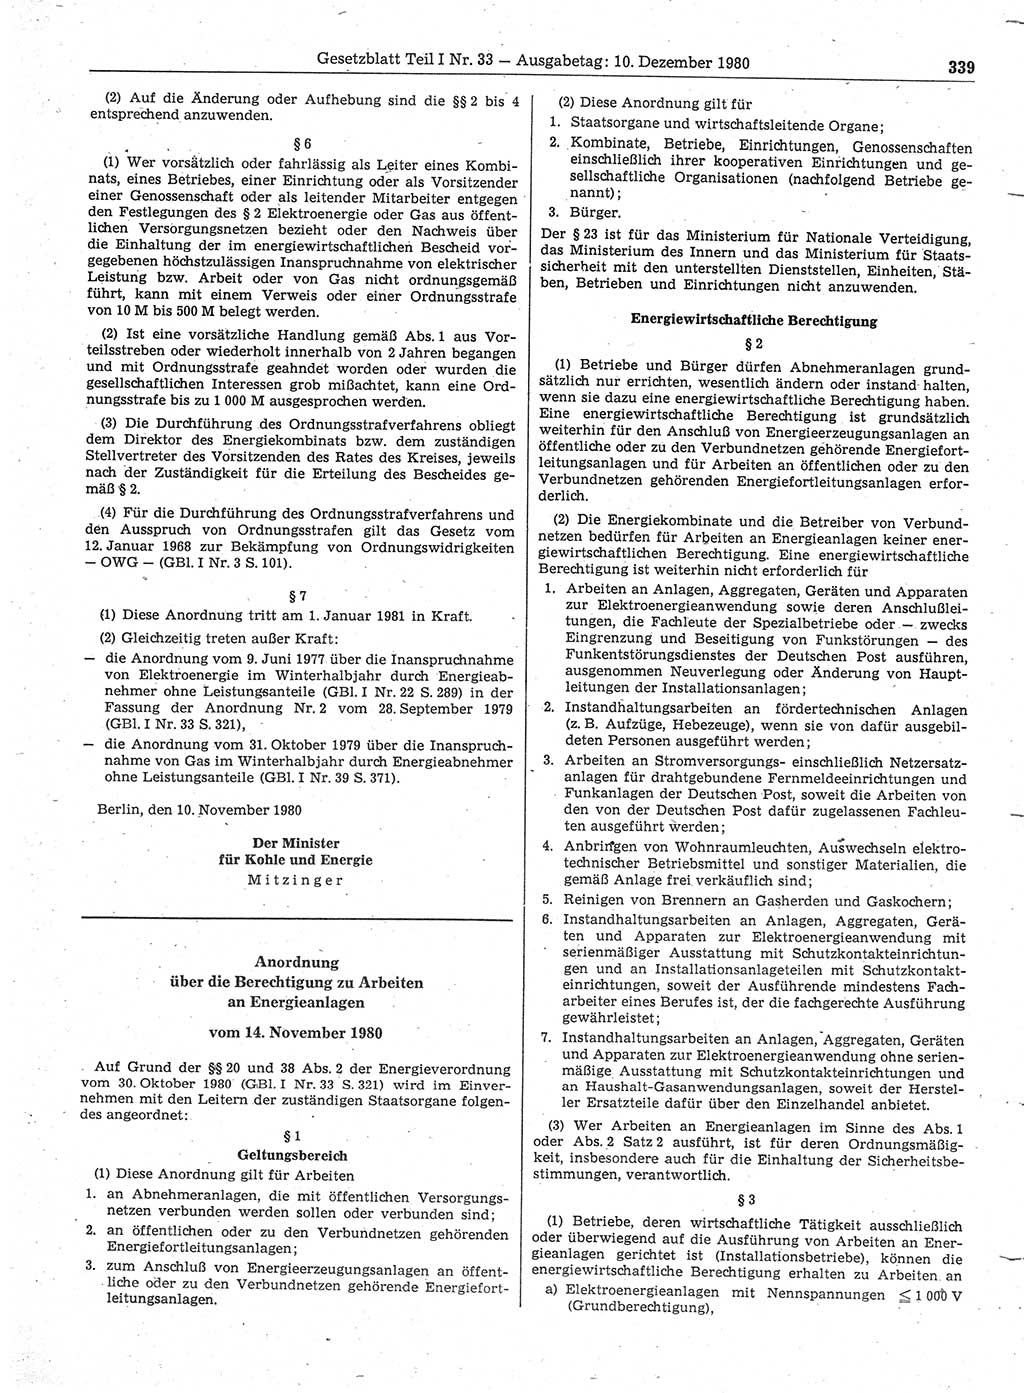 Gesetzblatt (GBl.) der Deutschen Demokratischen Republik (DDR) Teil Ⅰ 1980, Seite 339 (GBl. DDR Ⅰ 1980, S. 339)